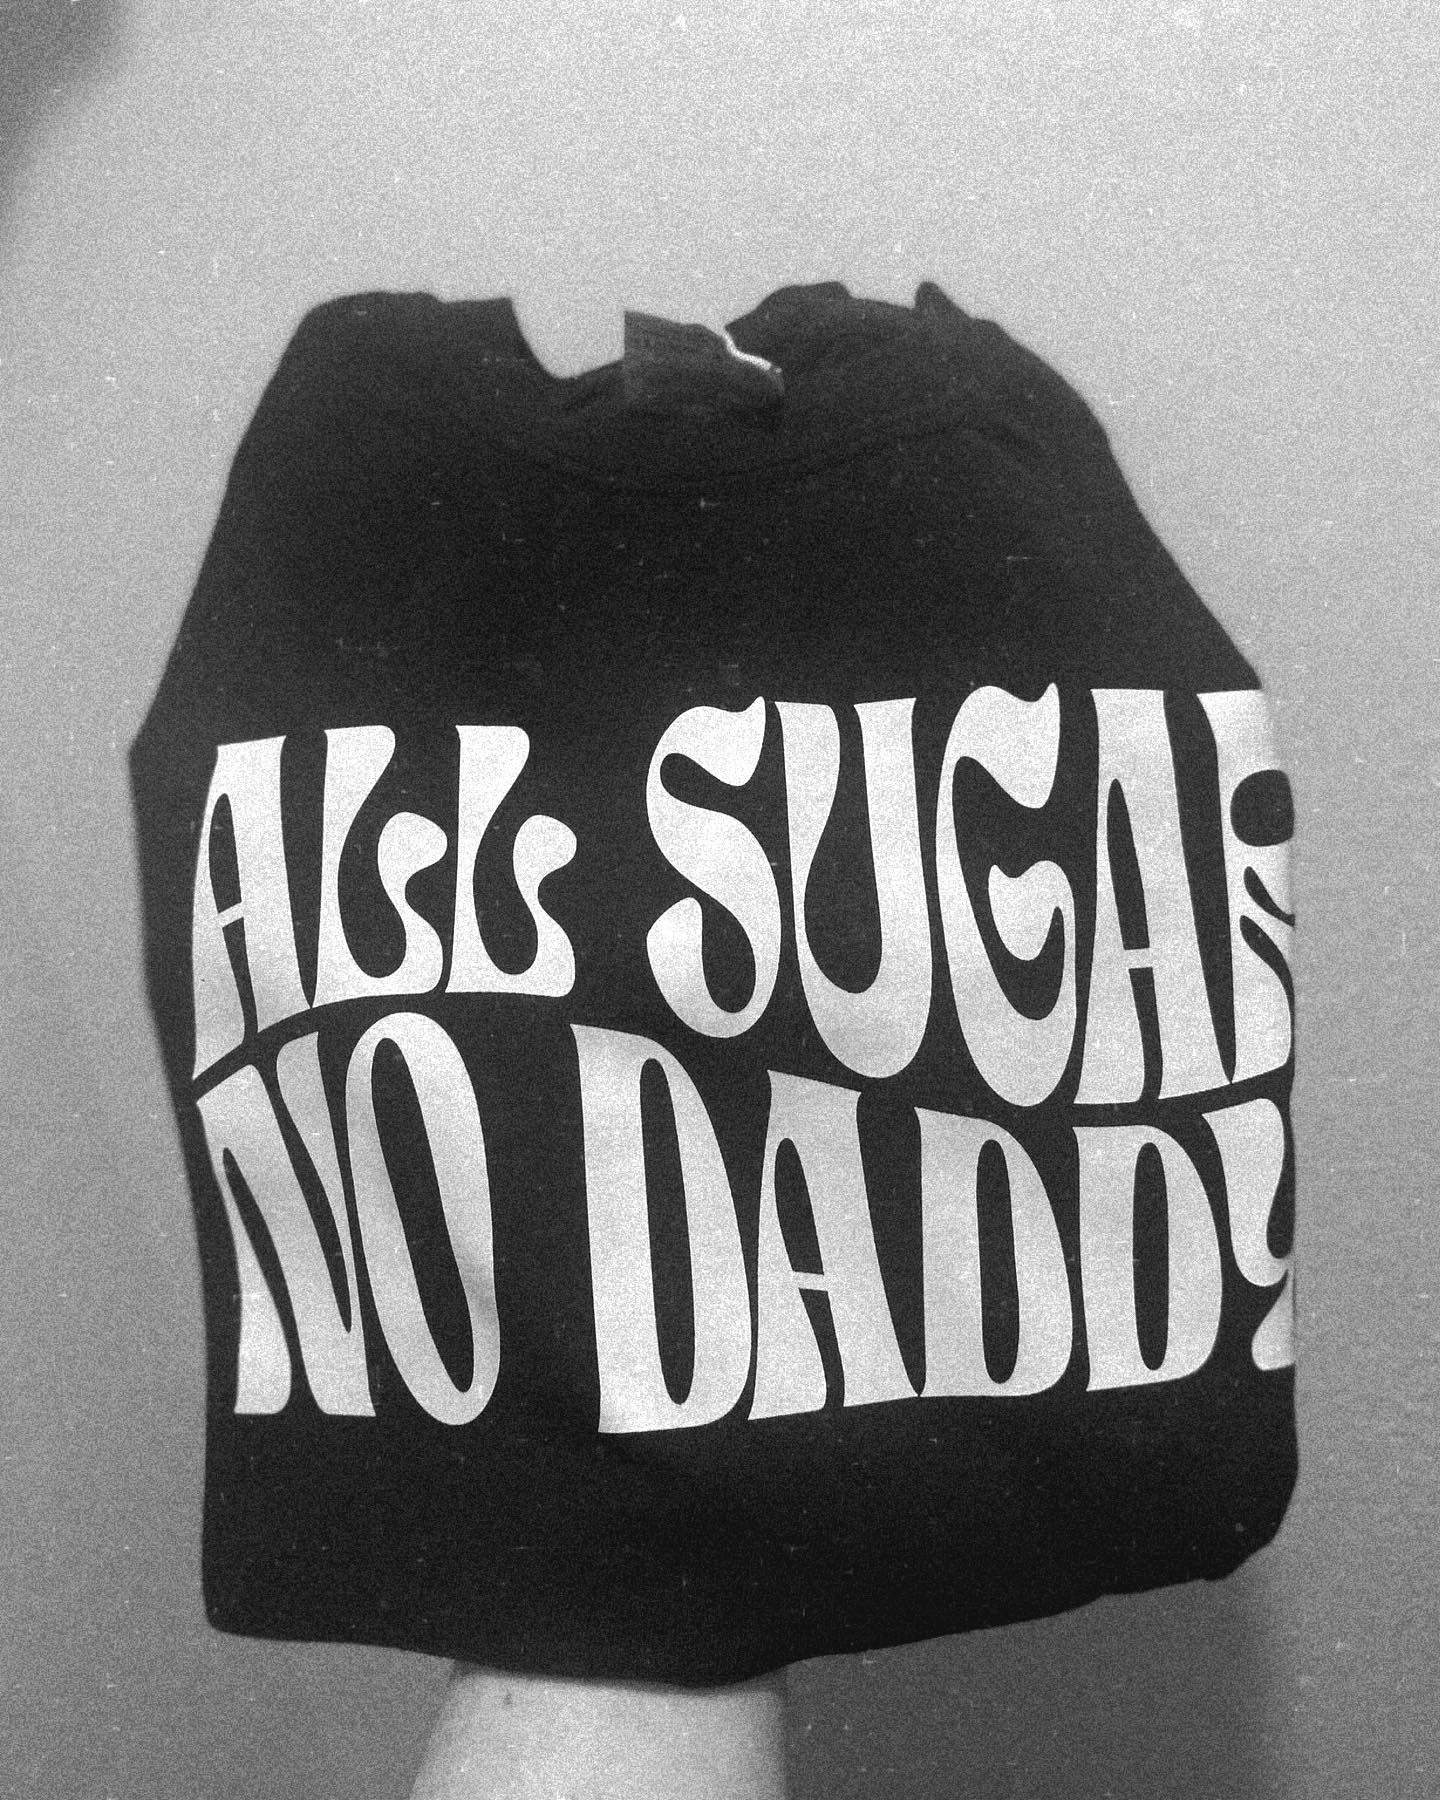 All Sugar No Daddy Tshirt